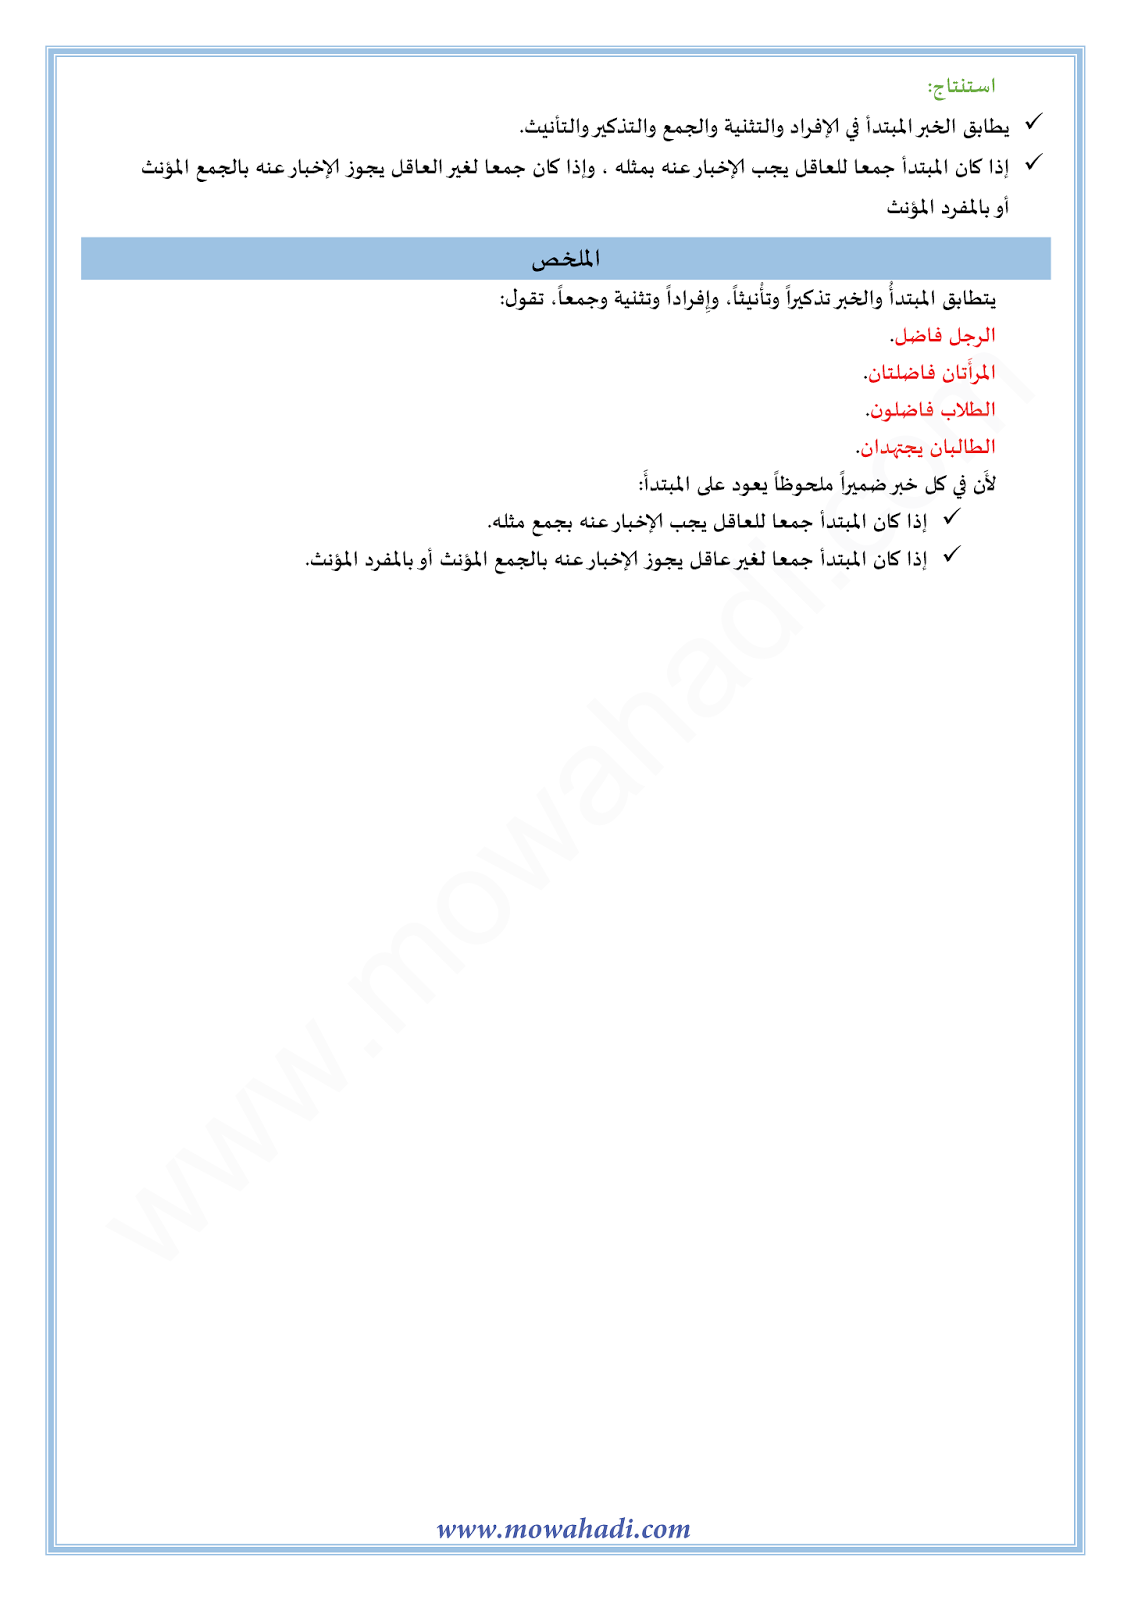 الدرس اللغوي المبتدأ و الخبر و تطابقهما للسنة الأولى اعدادي في مادة اللغة العربية 19-cours-dars-loghawi1_002